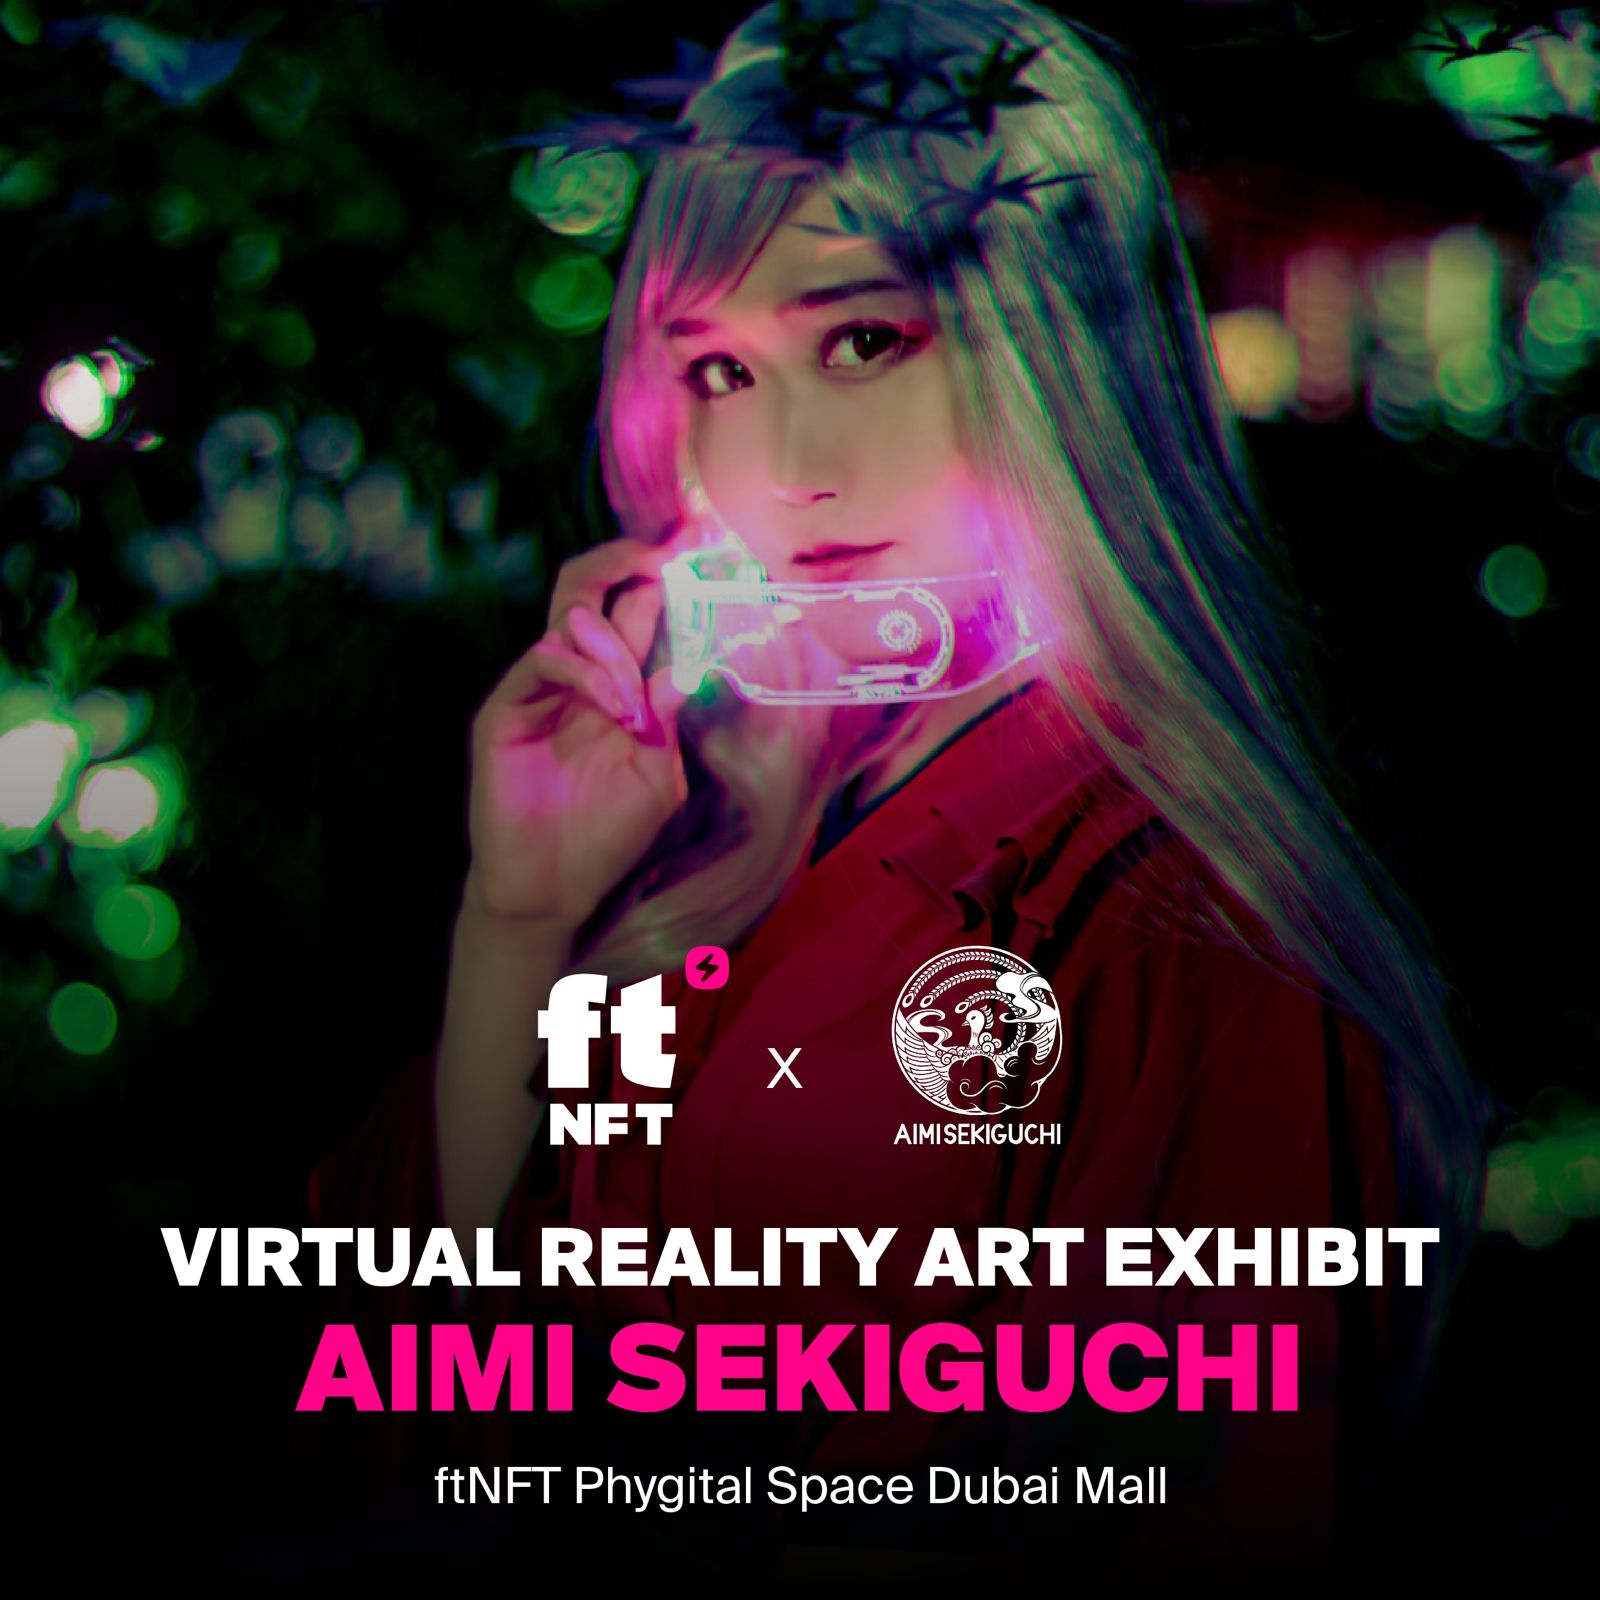 Image for ftNFT Announces Aimi Sekiguchi’s Solo VR Art Exhibition In Dubai Mall